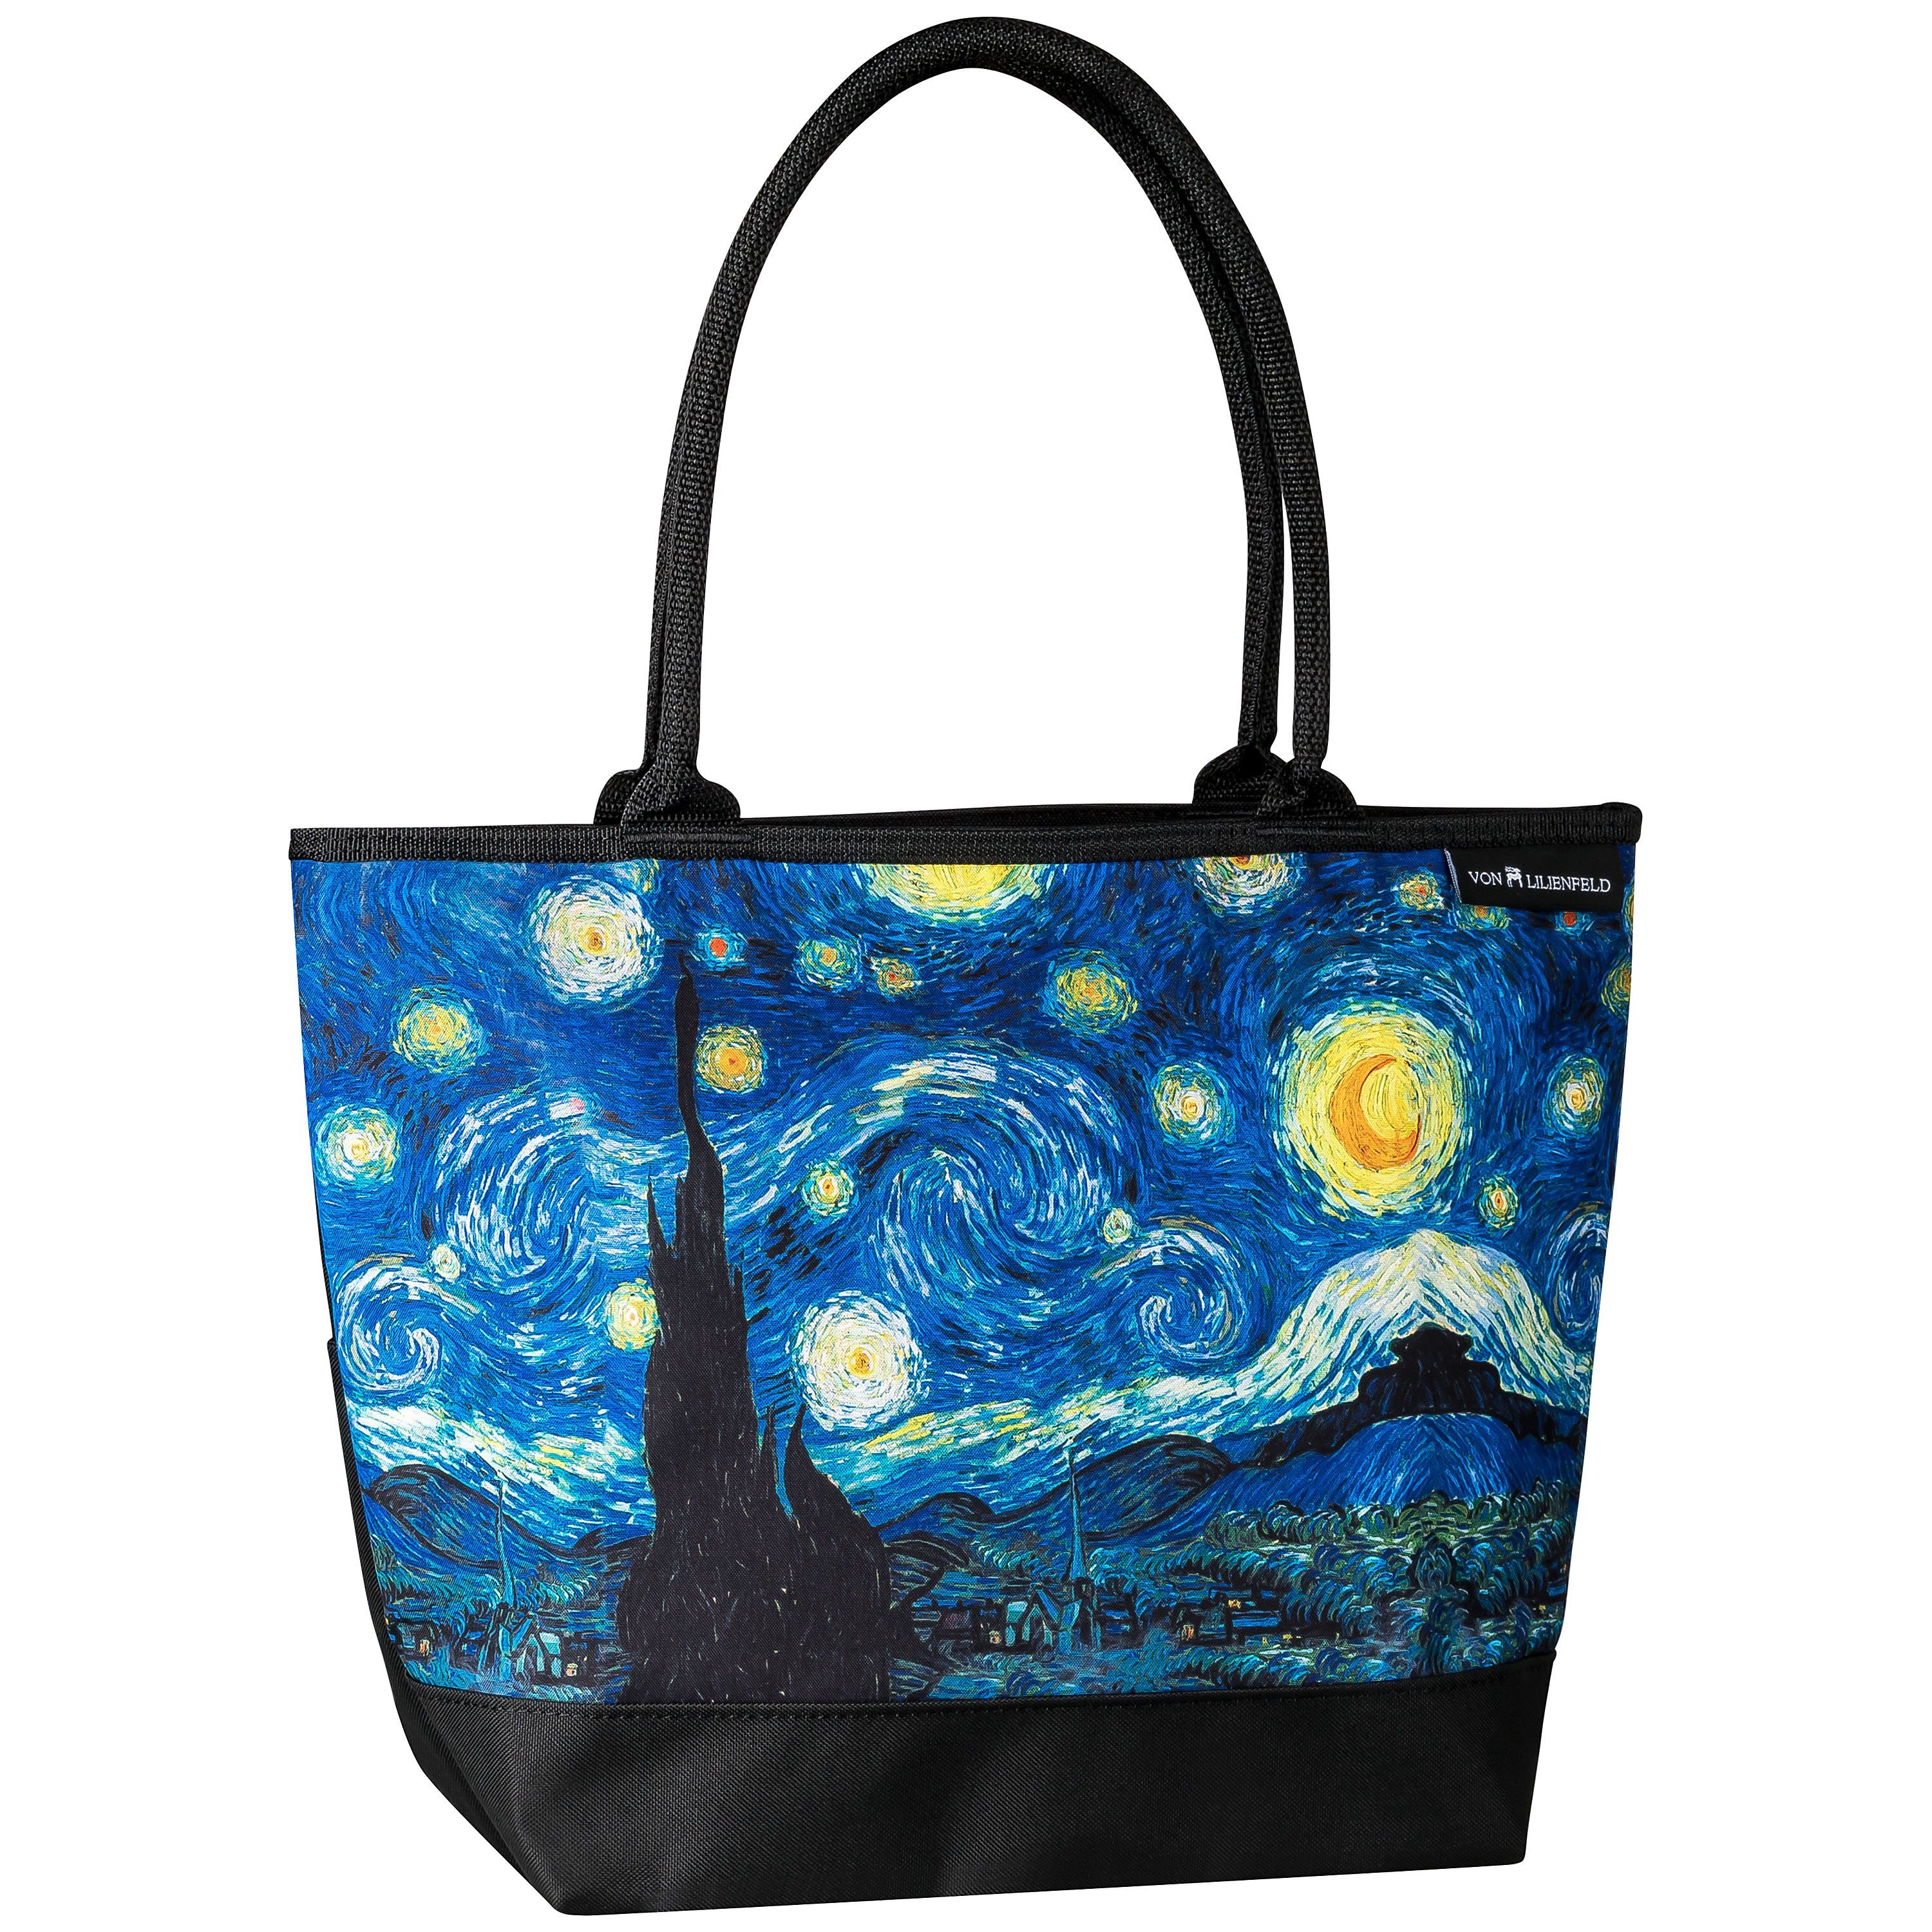 von Lilienfeld Handtasche Tasche Vincent van Gogh Sternennacht Motiv Kunst Shopper